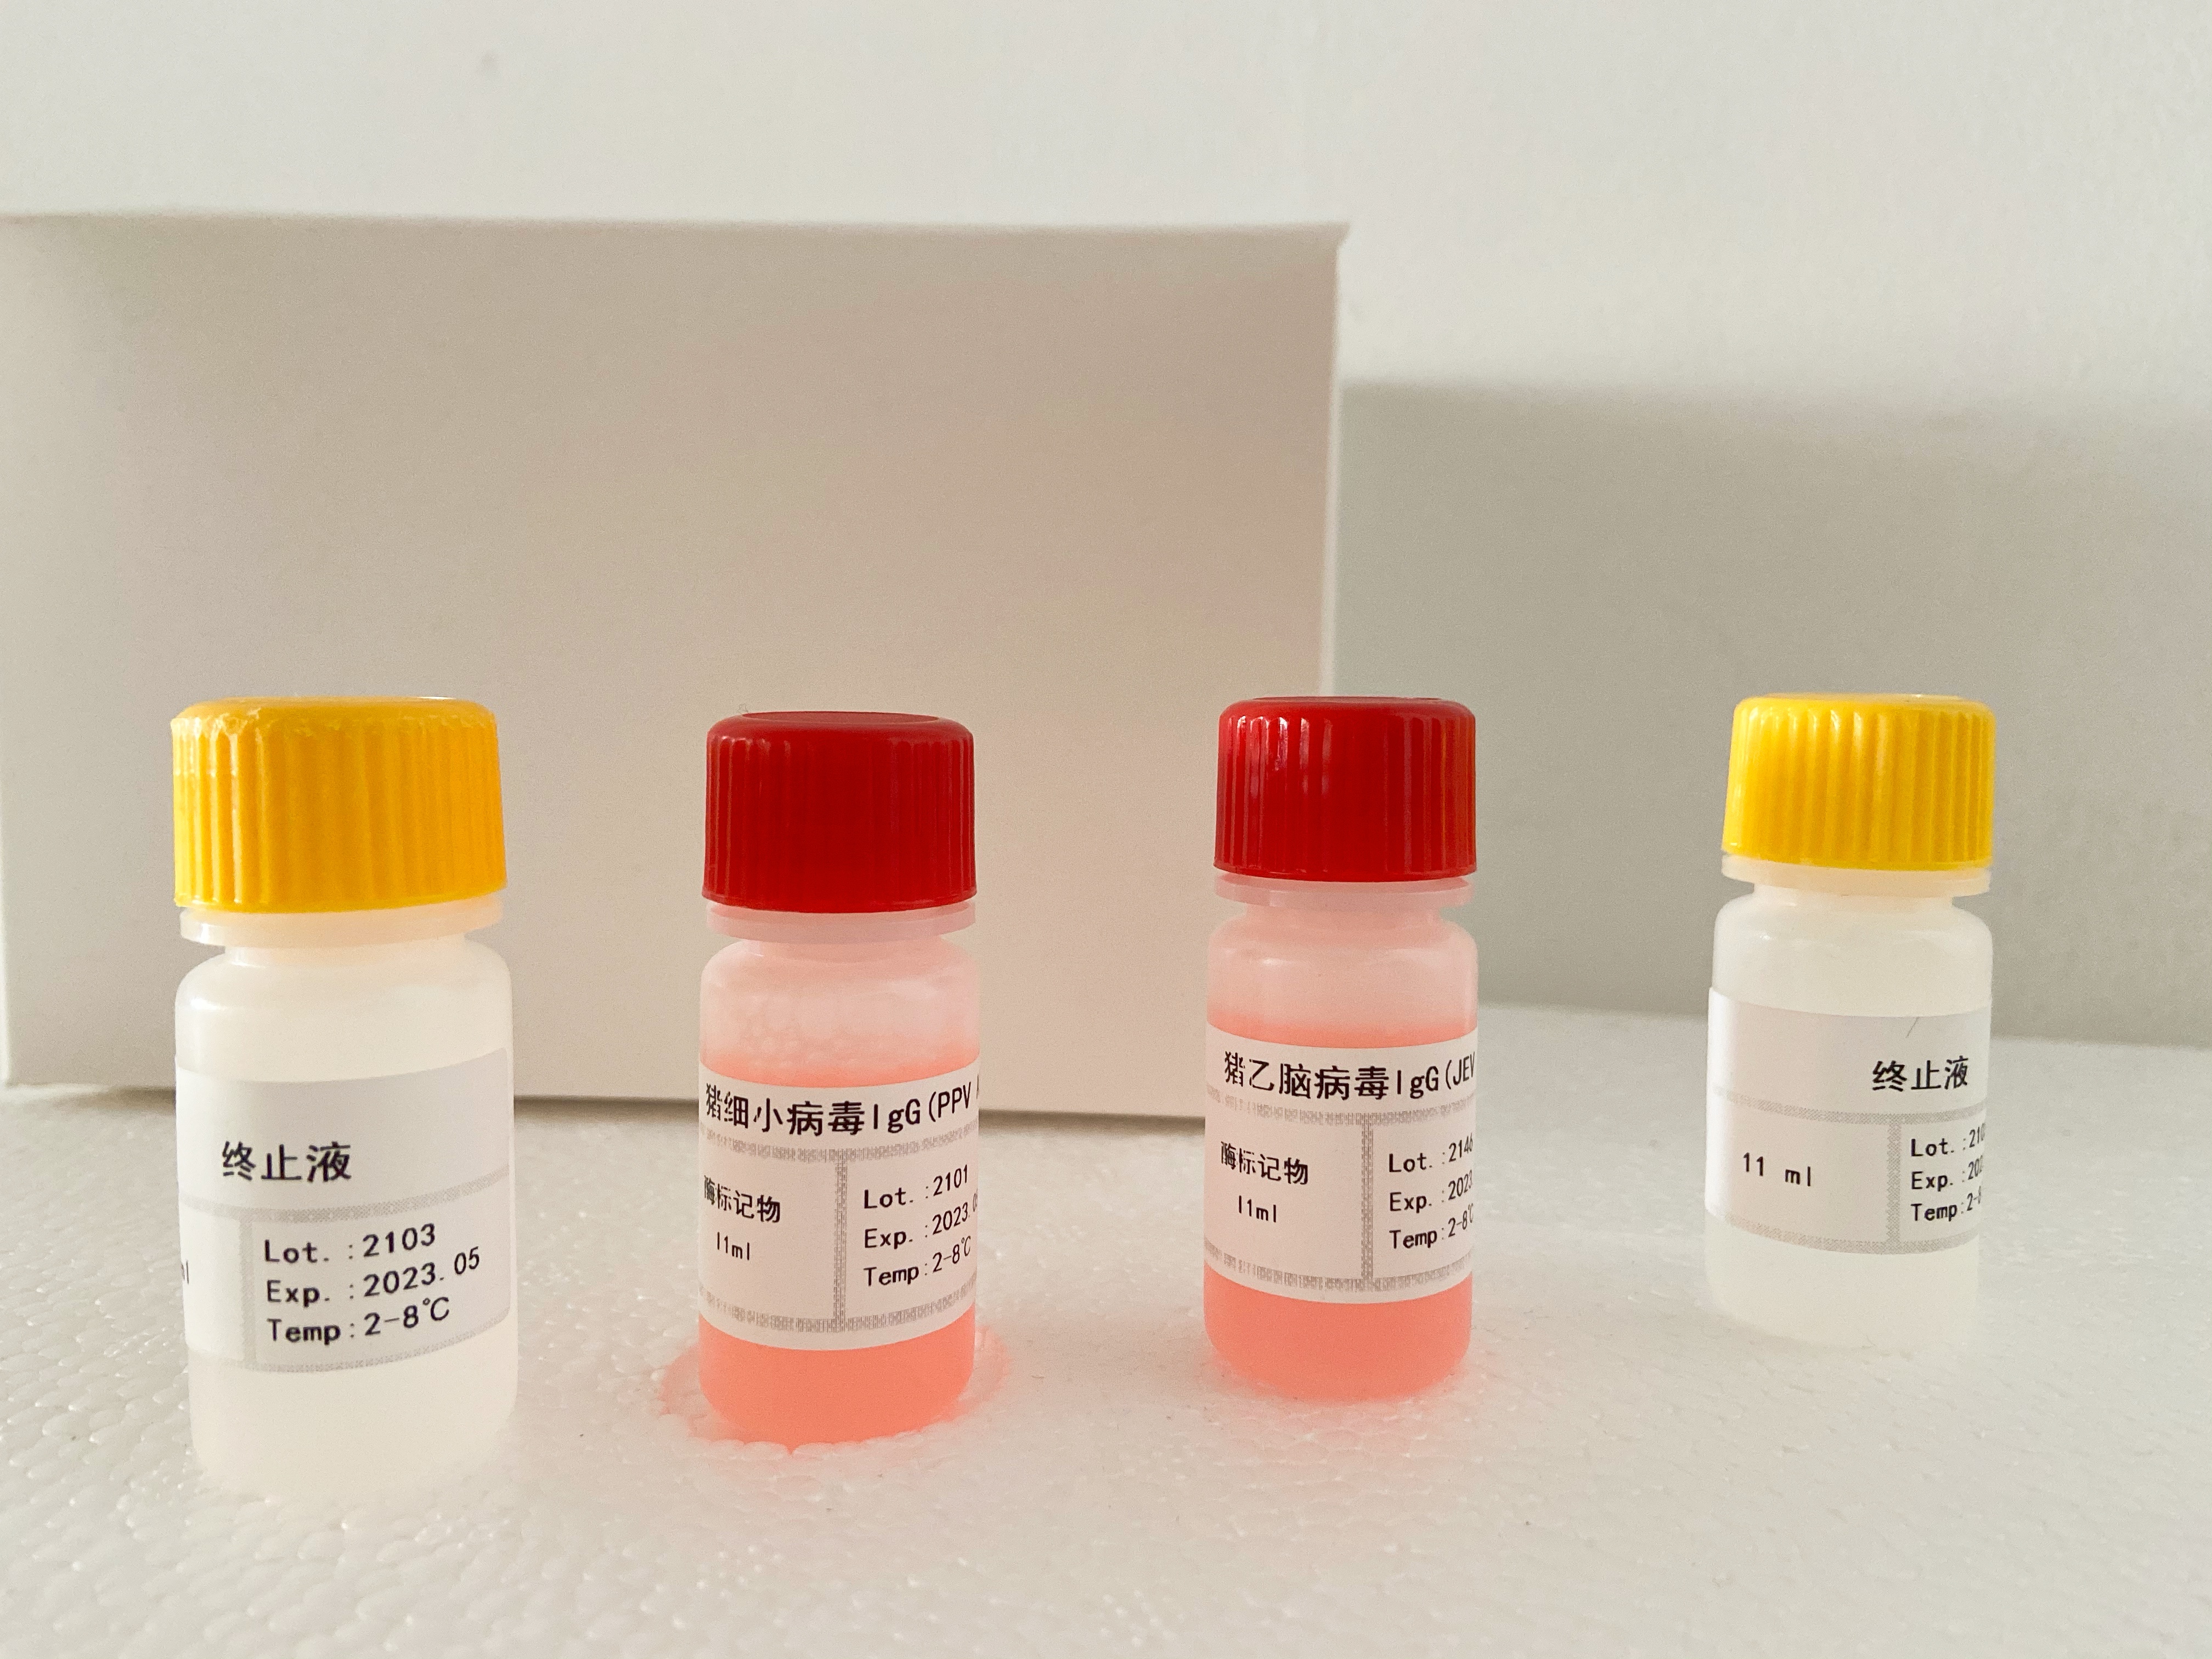 小鼠髓过氧化物酶(MPO)检测试剂盒